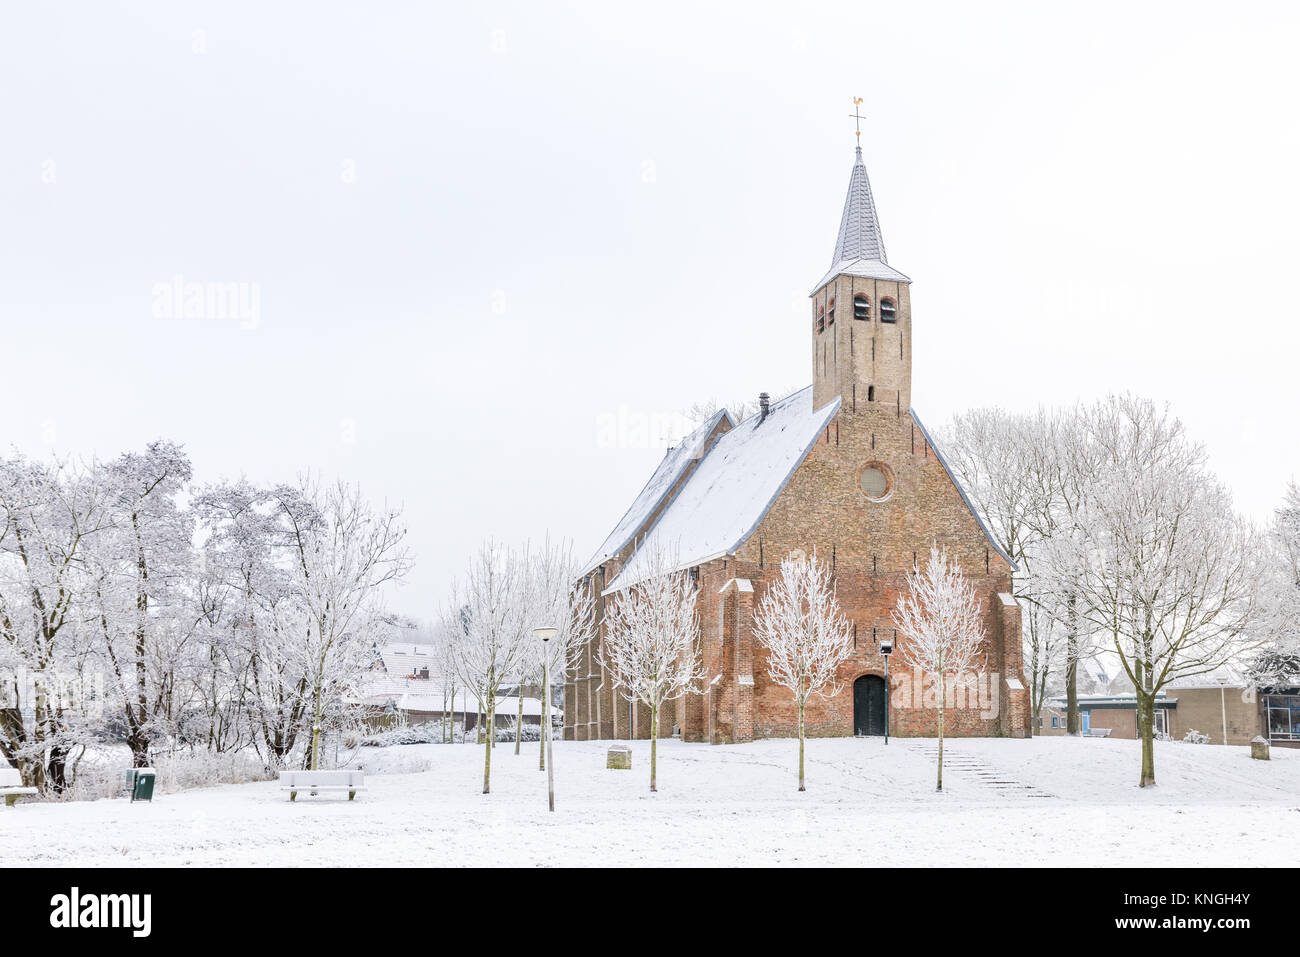 Historique L'église Saint-Martin en Zwartewaal dans les Pays-Bas au cours de l'hiver avec la neige et les arbres hoarfrosted. Banque D'Images